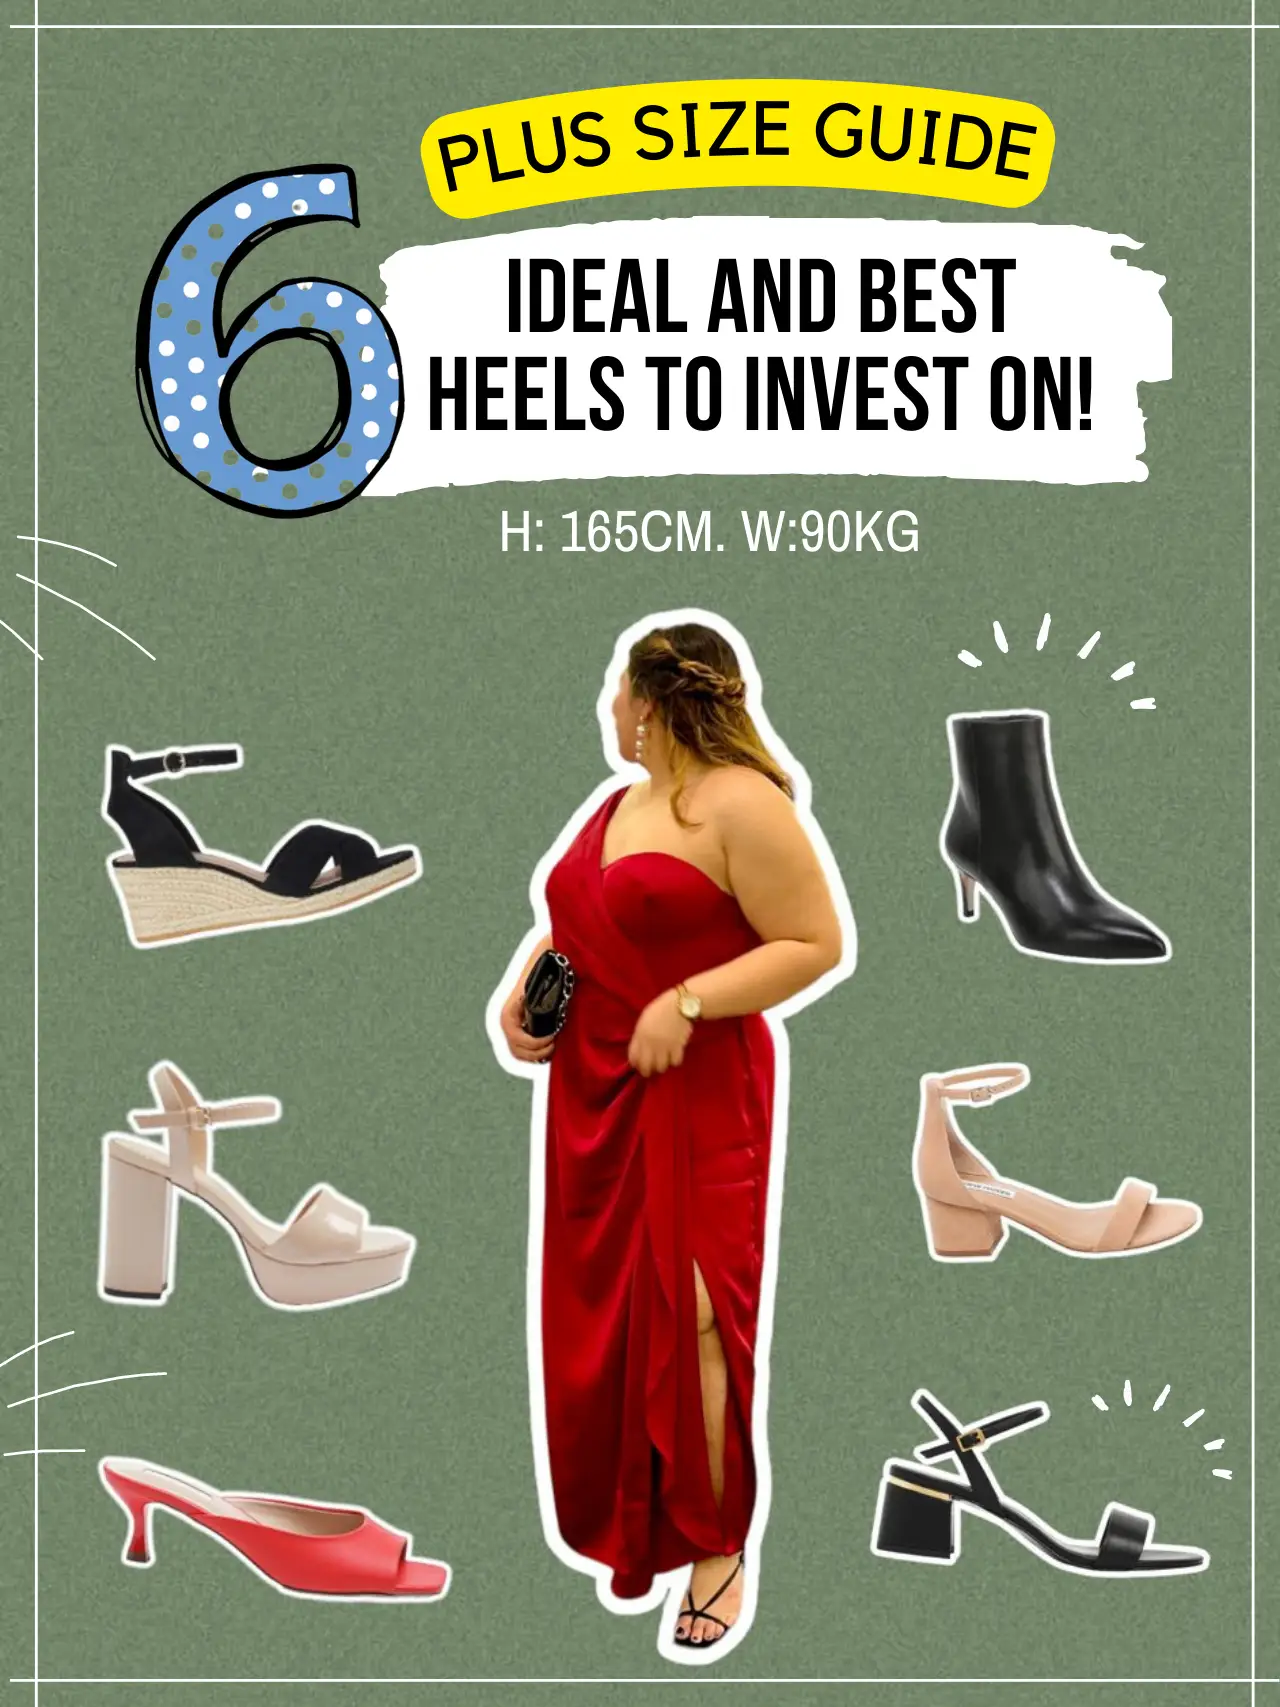 High heels for plus size women Platform heels & wedge heels are